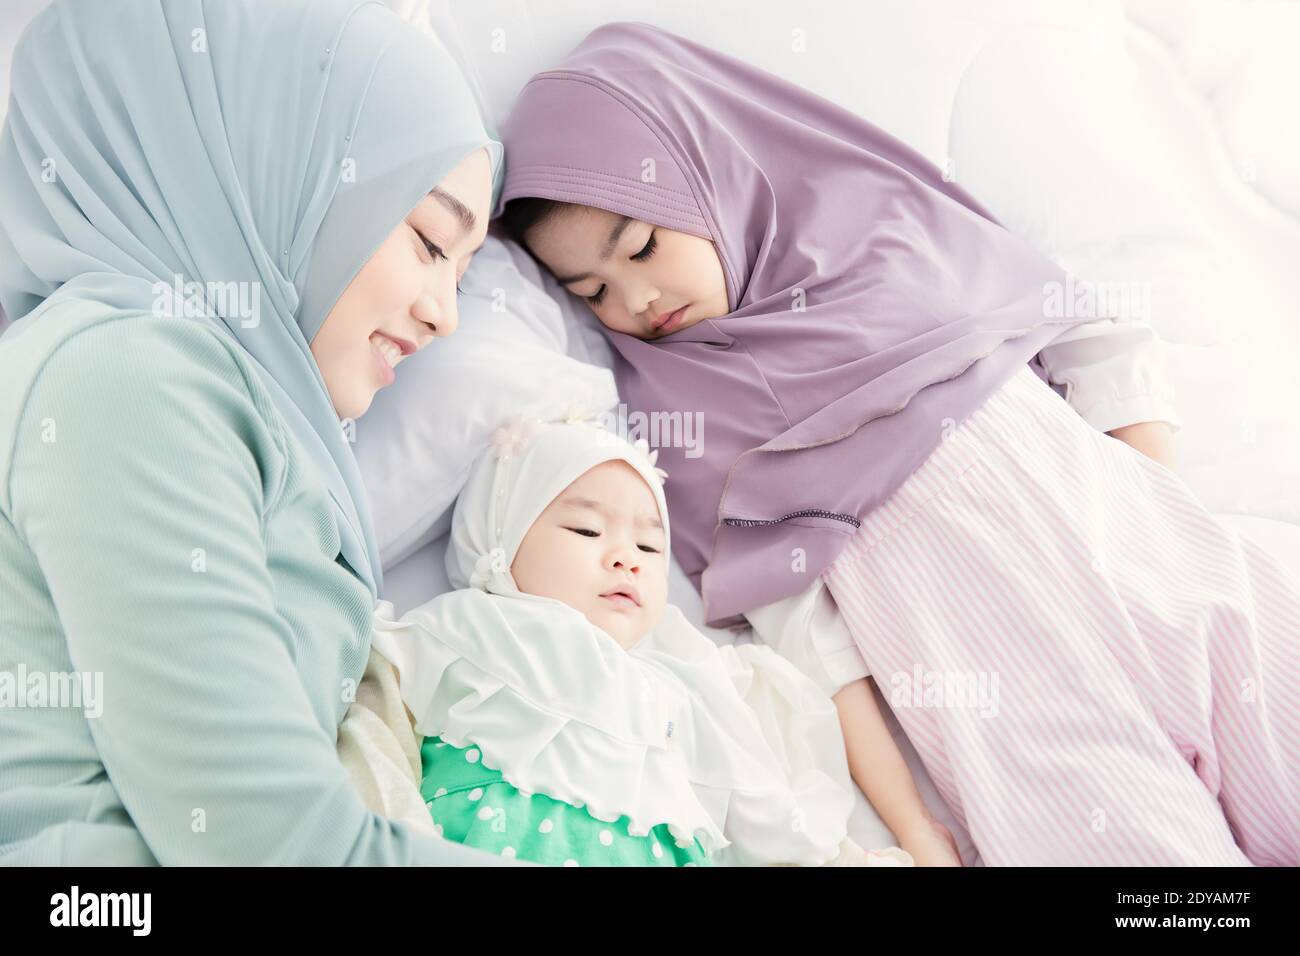 La madre musulmana di Hijab continua a guardare e a coccolare il bambino addormentato con amore e cura sul letto. Foto Stock